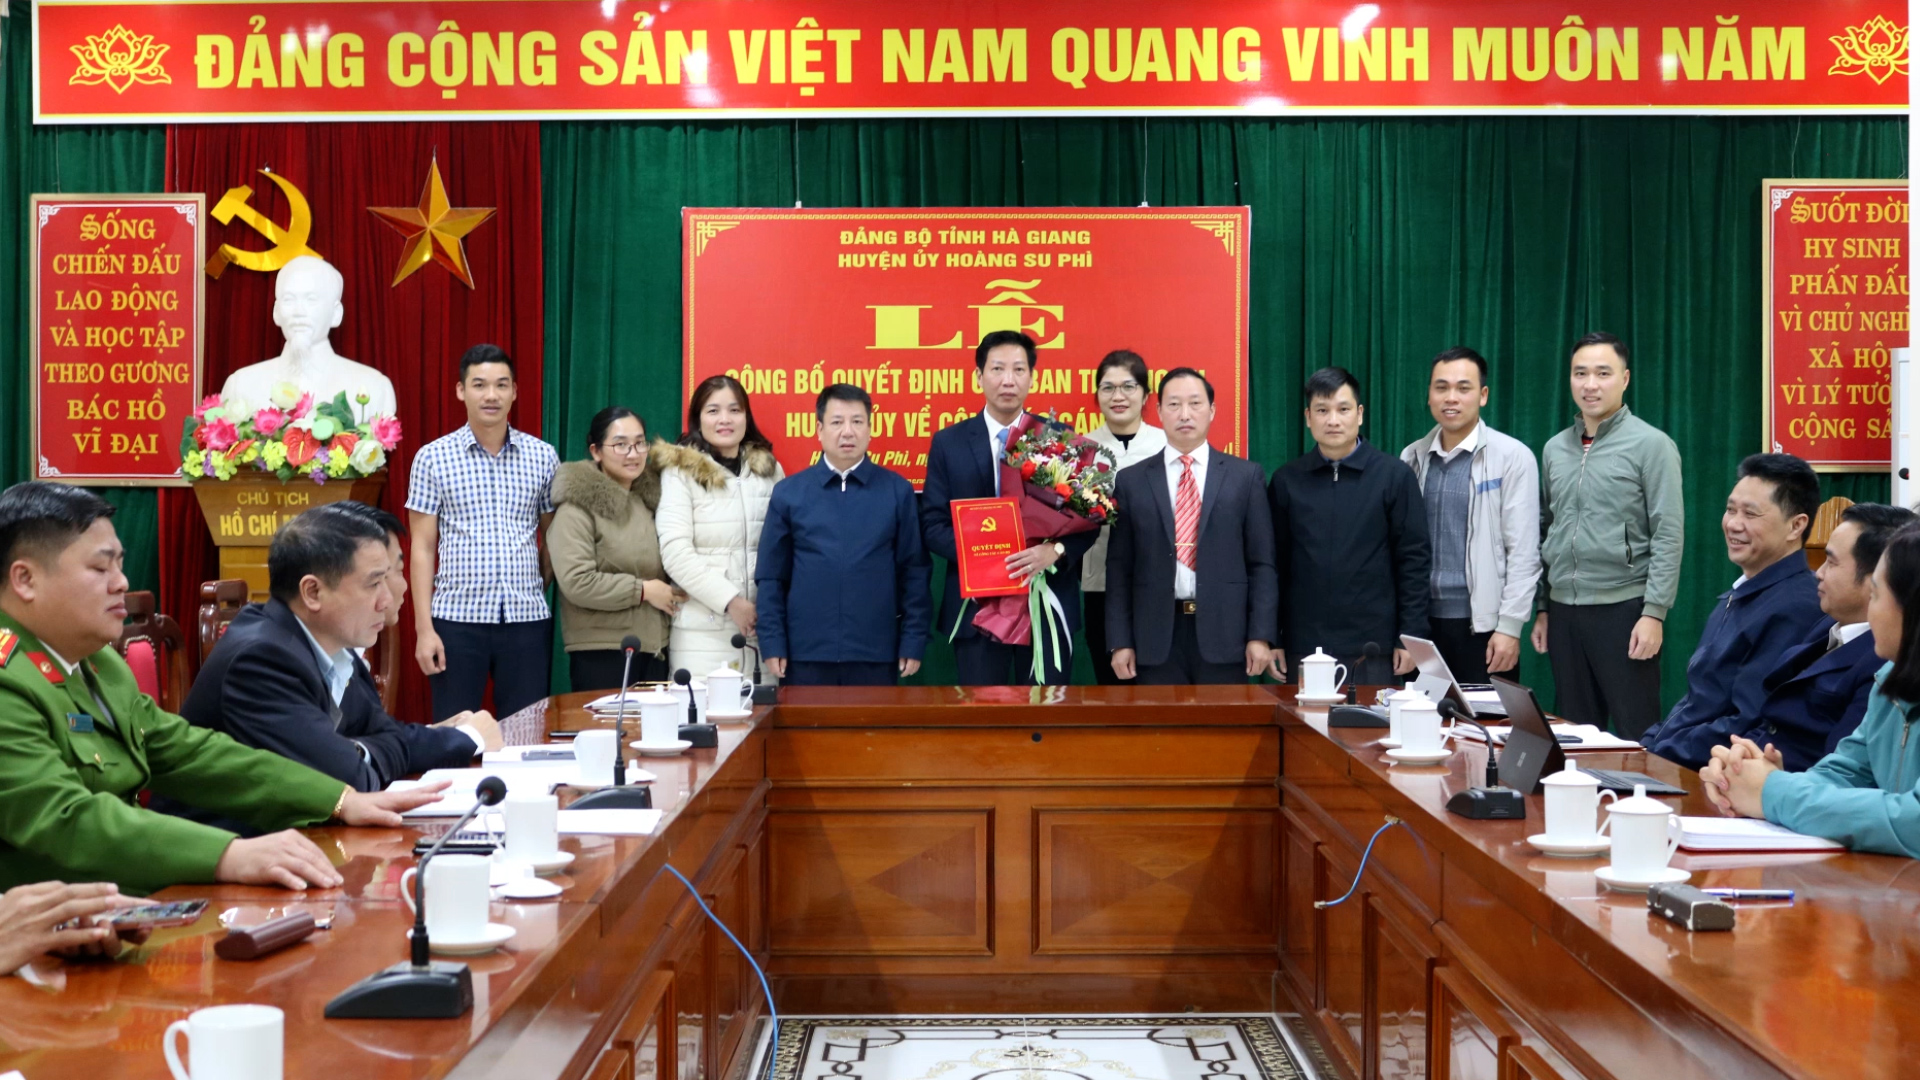 Công bố Quyết định của BTV huyện ủy Hoàng Su Phì về công tác cán bộ